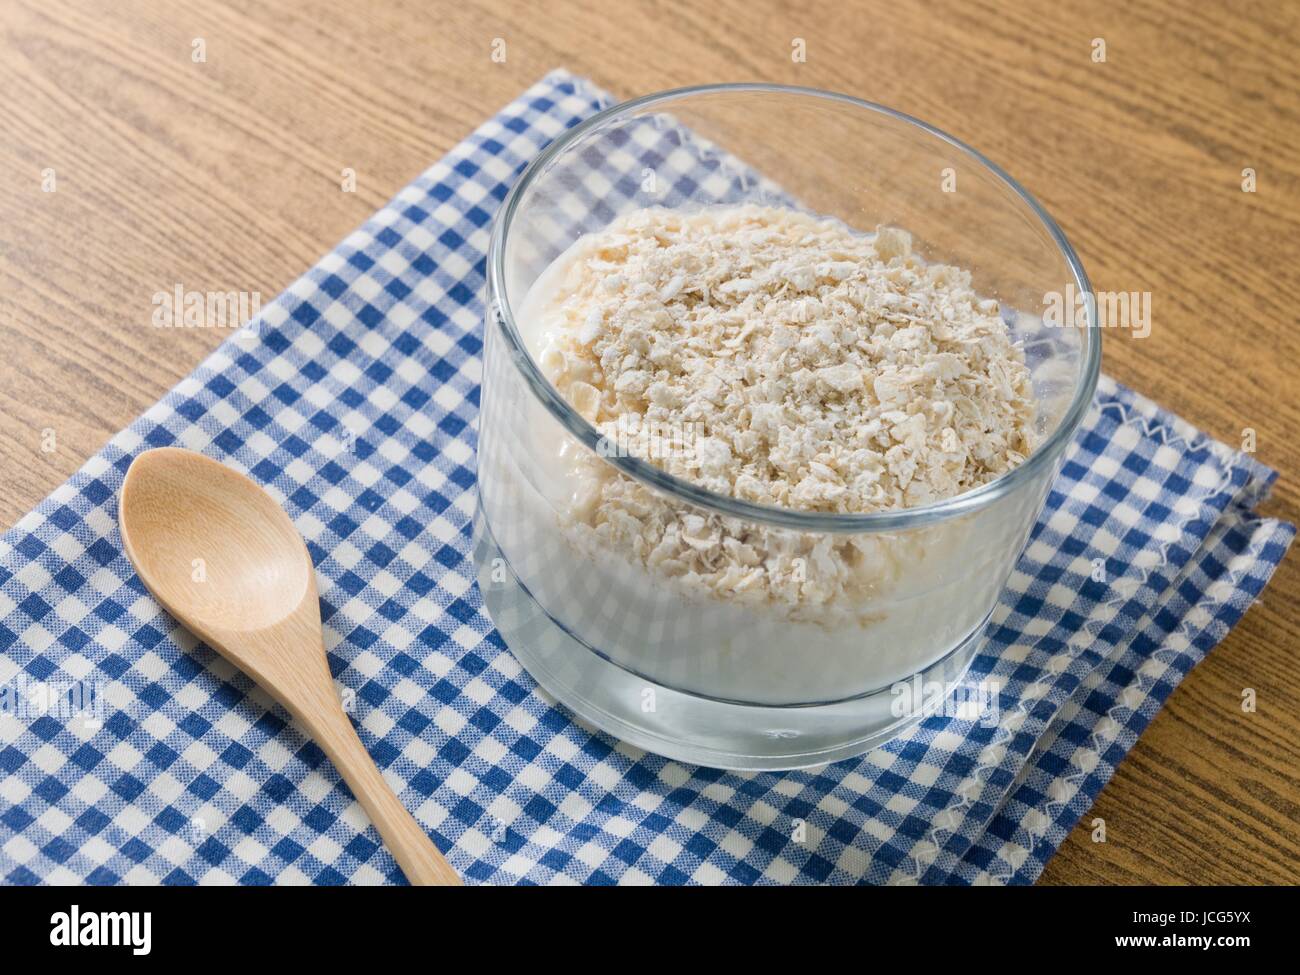 La garniture du yaourt fait maison saine avec l'Avoine Porridge, du point de vue nutritionnel riche en protéines, calcium, riboflavine, vitamine B6 et vitamine B12. Banque D'Images